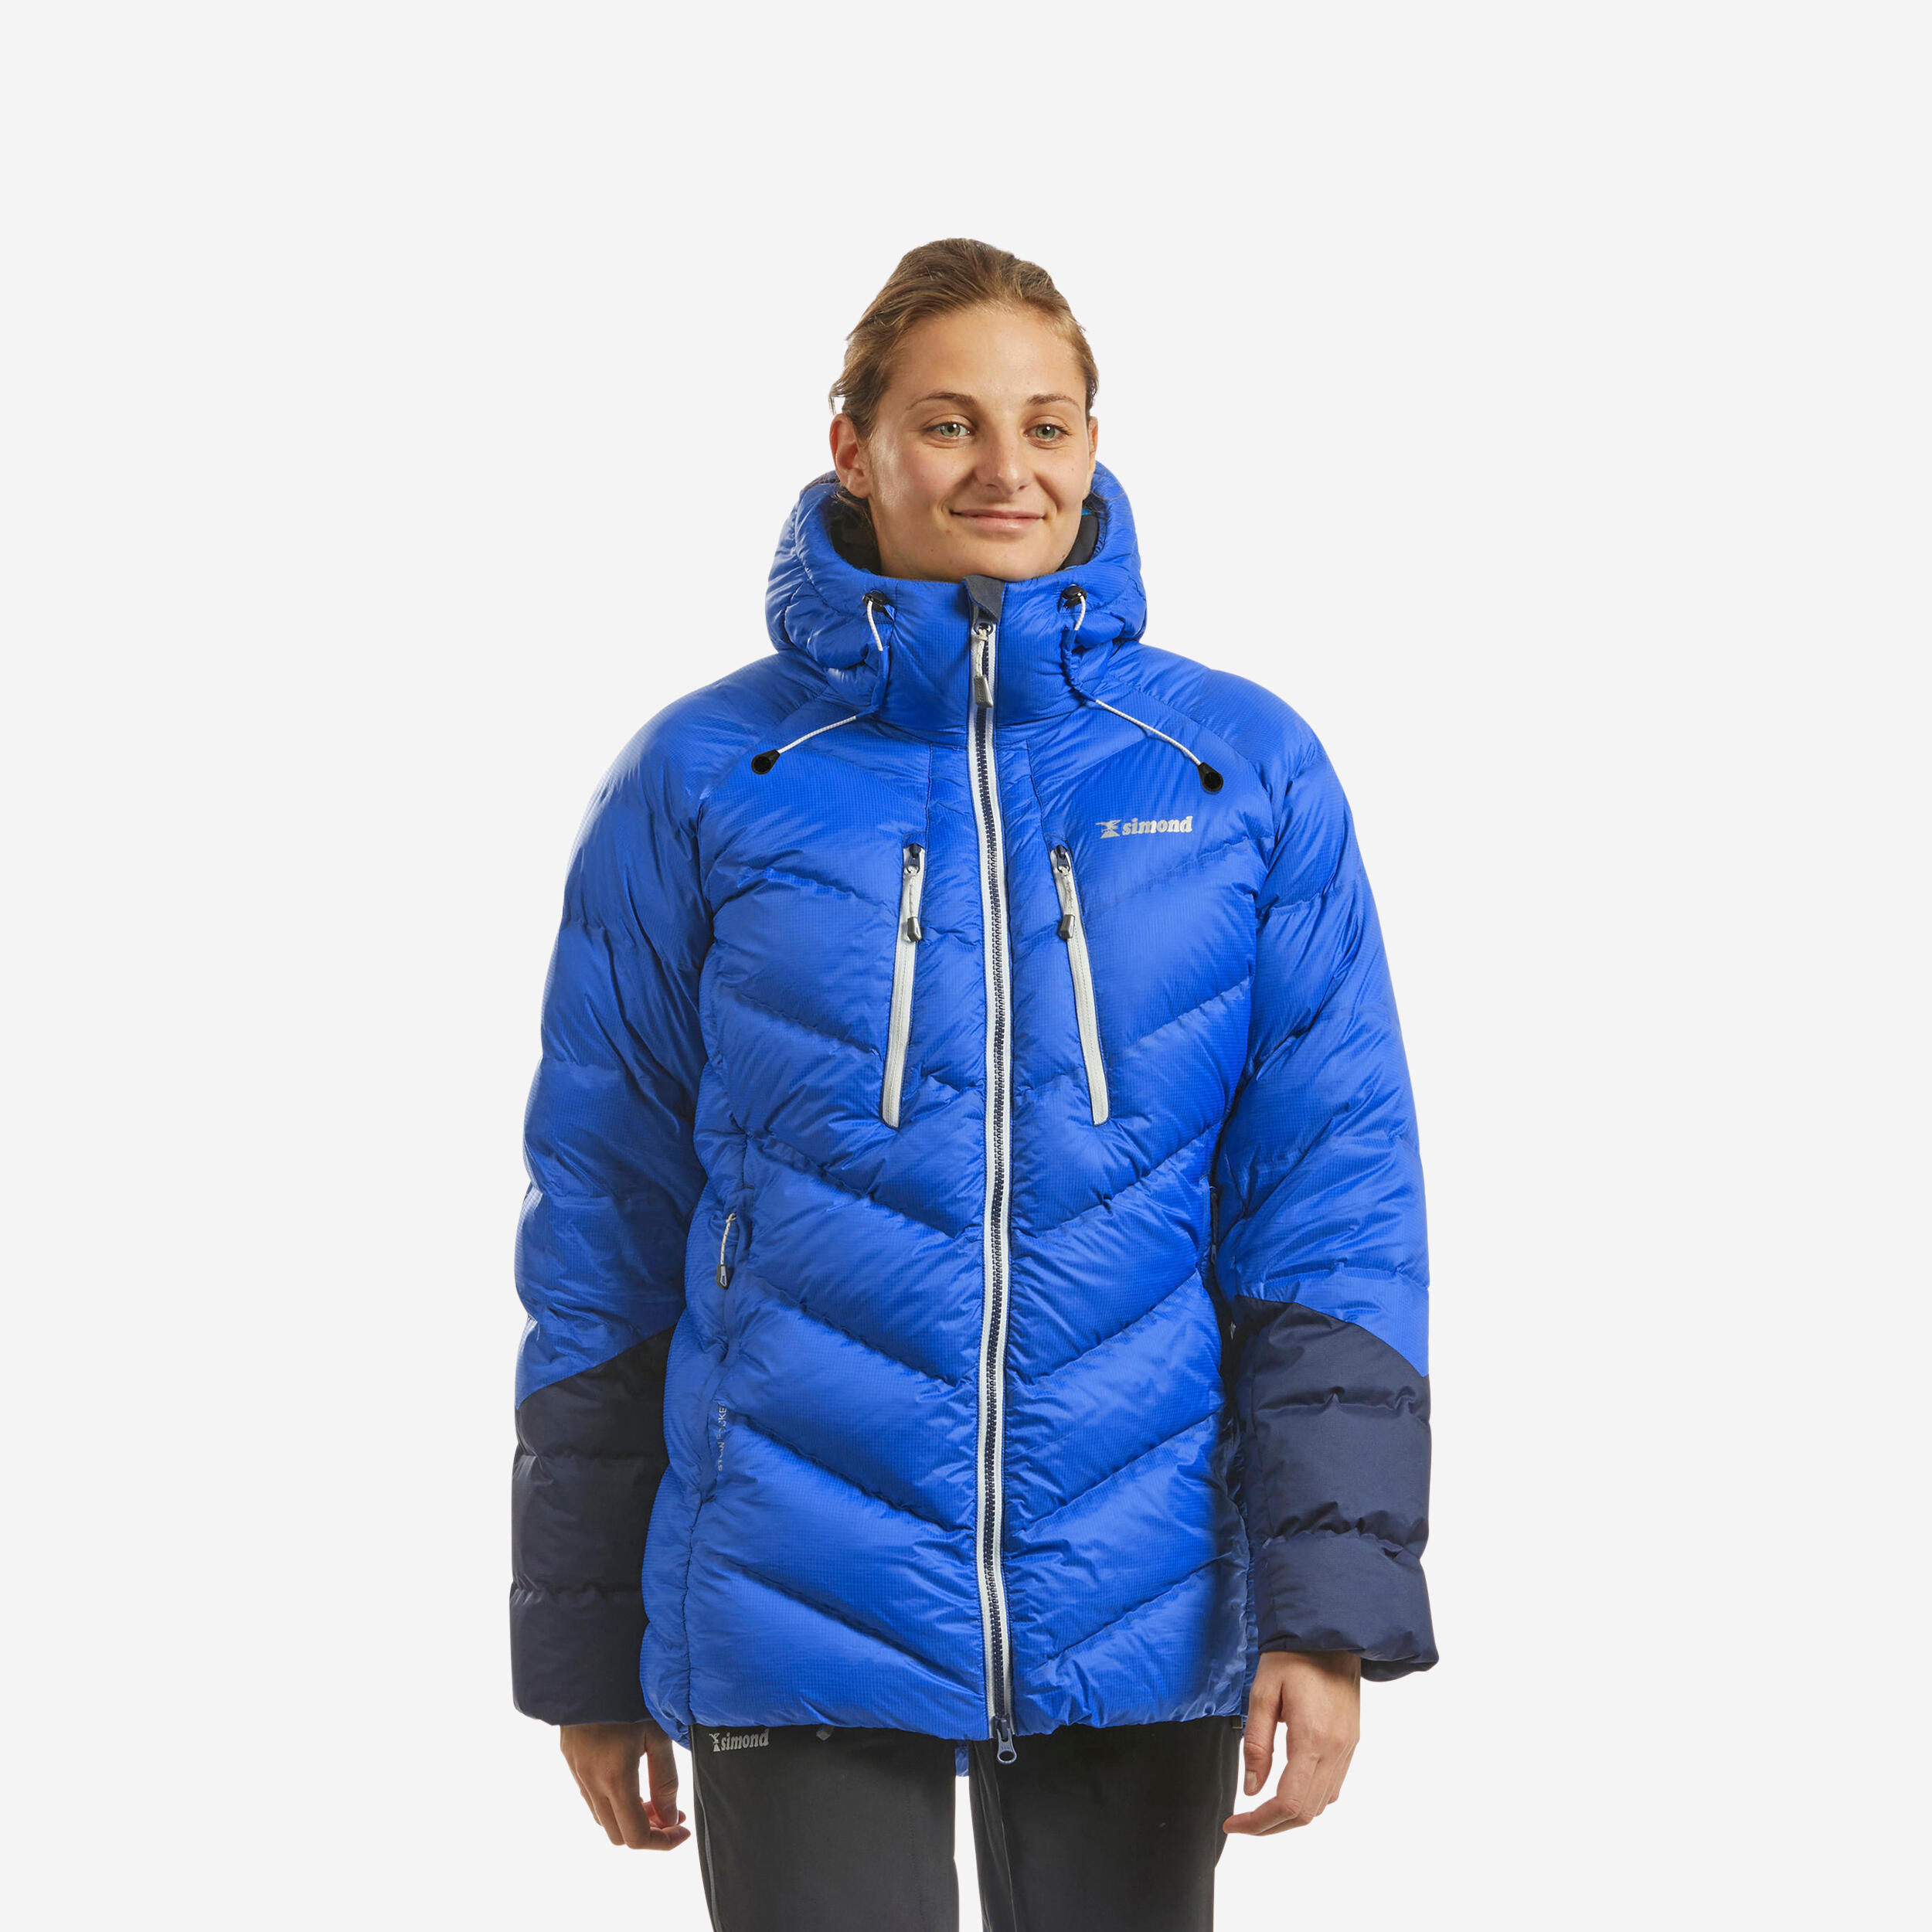 Women's Winter Jacket - SH 900 - Linen - Quechua - Decathlon